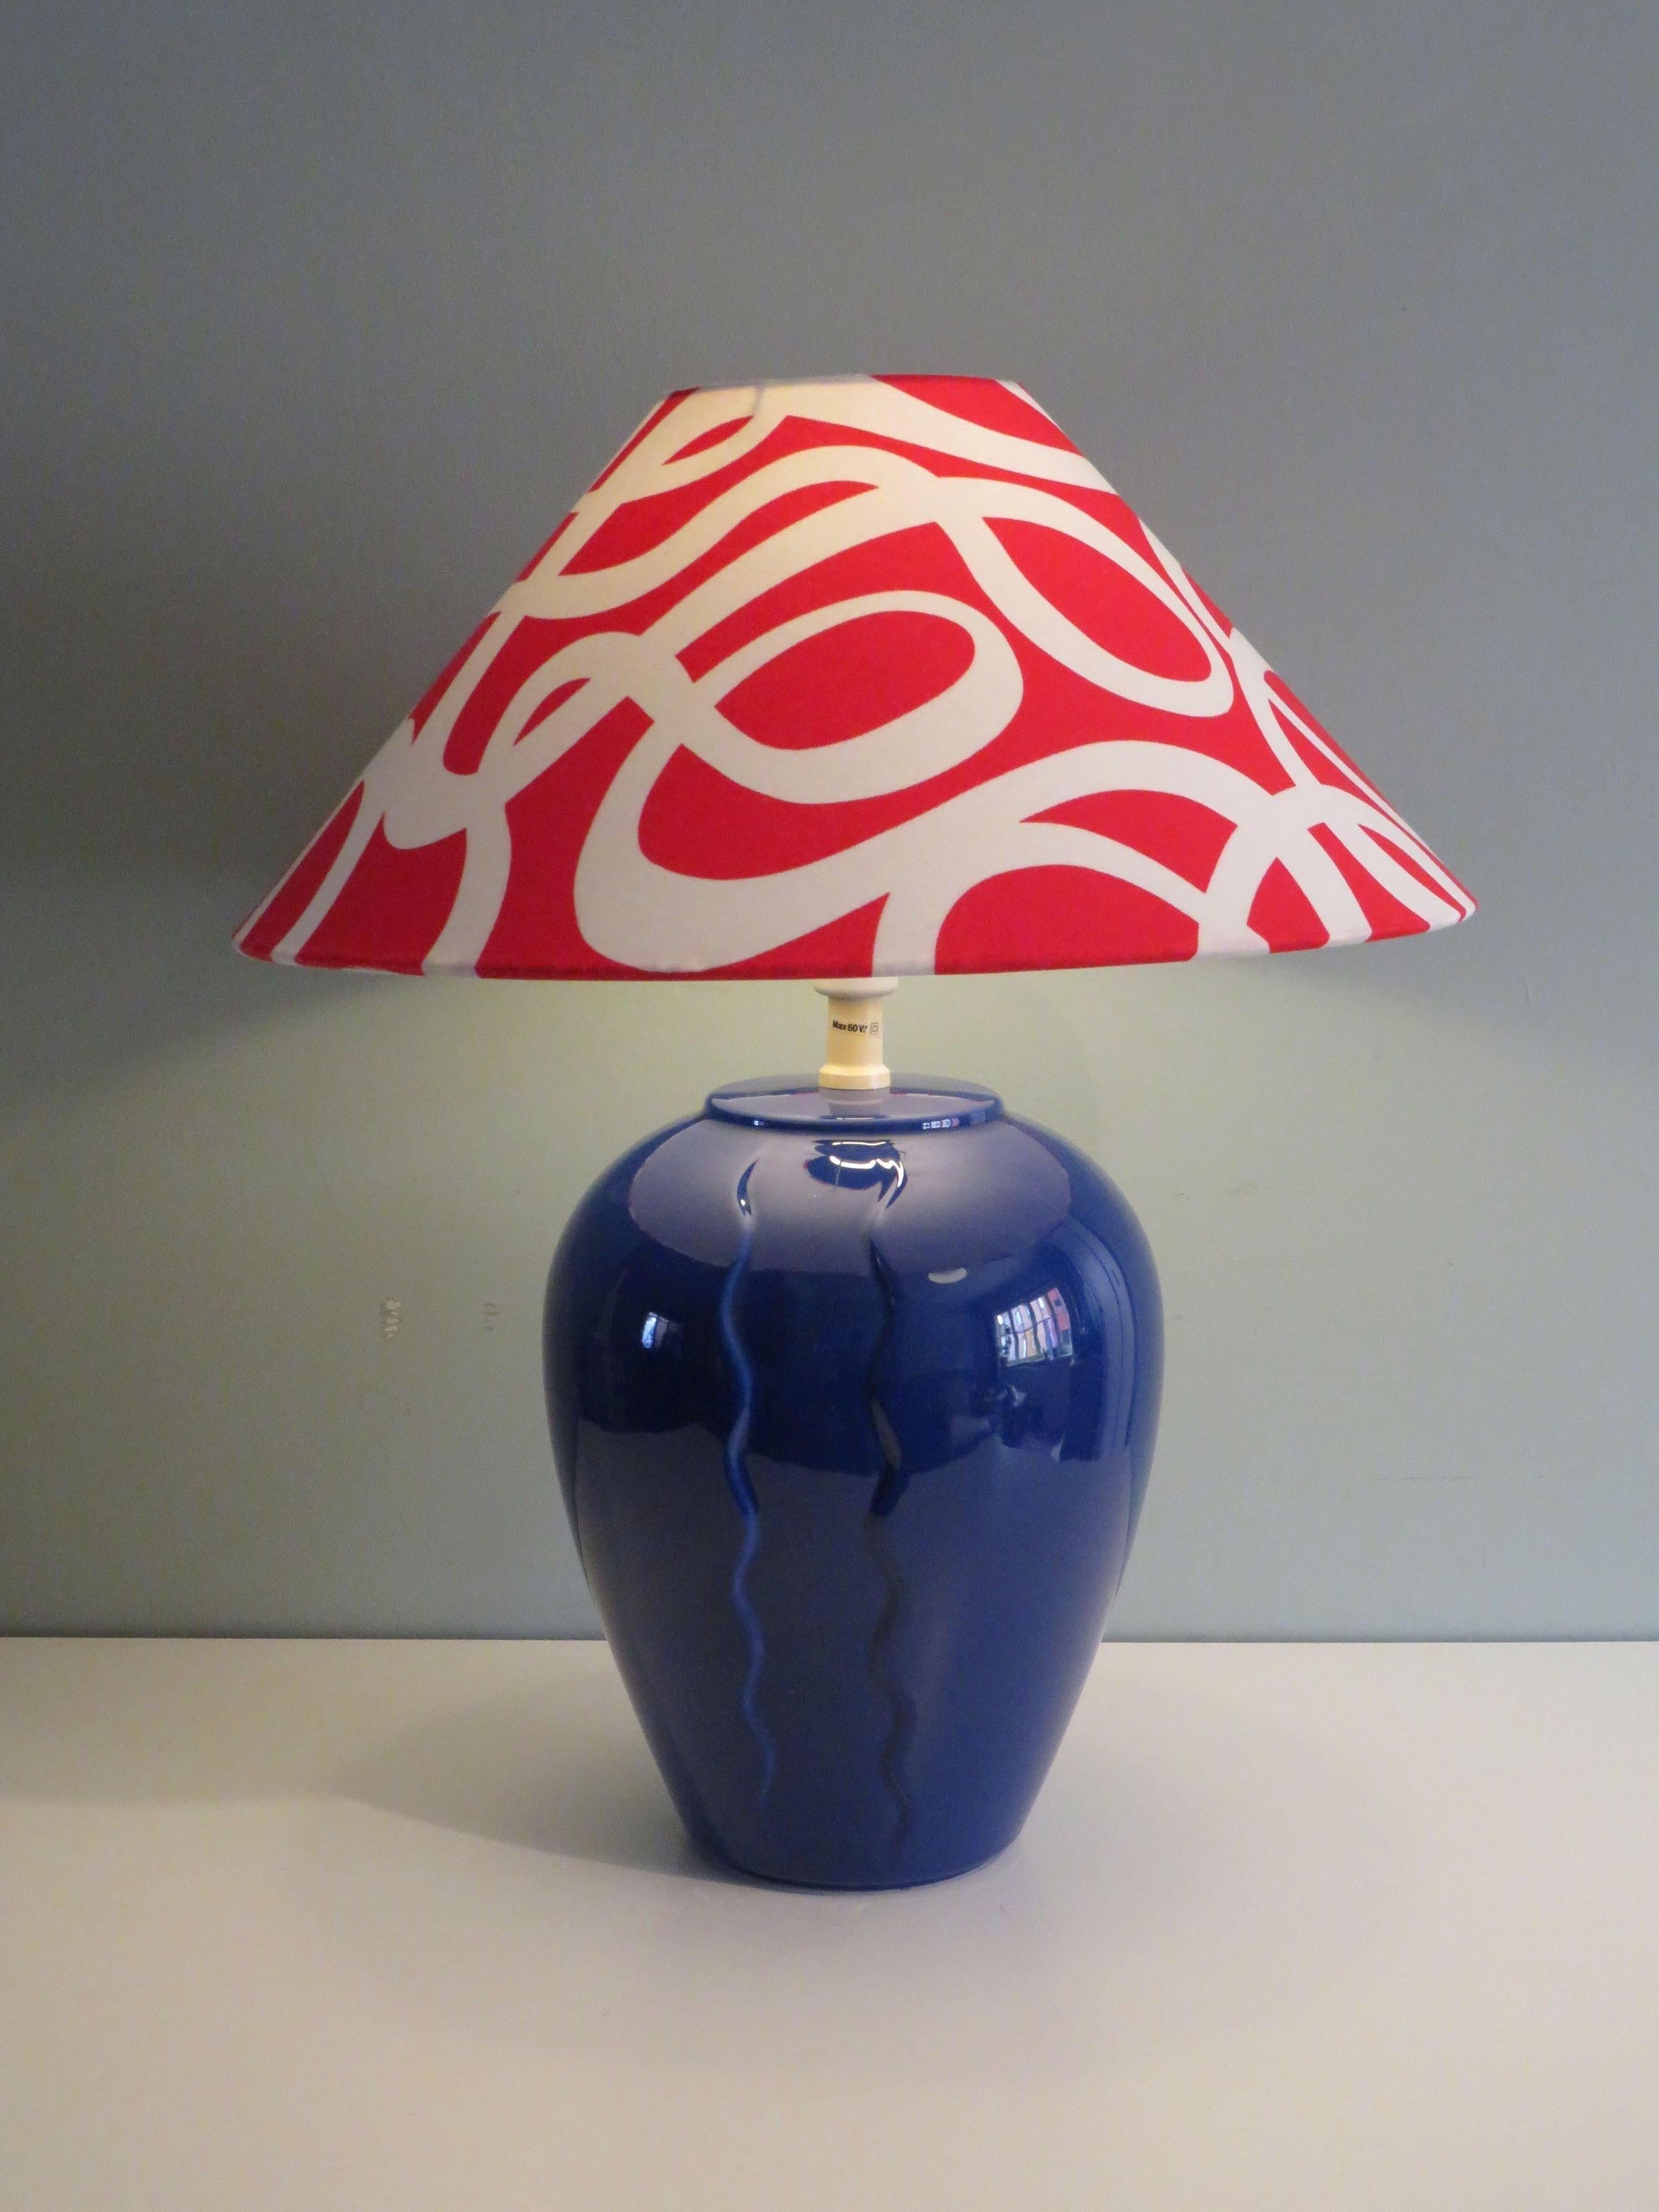 Lampe de table en céramique bleue de style Memphis par Ikea, années 1980. Le Label est situé au bas de la base de la table en céramique.
Le socle en céramique bleu intense est doté d'un abat-jour en tissu rouge-blanc réalisé sur mesure par Erika